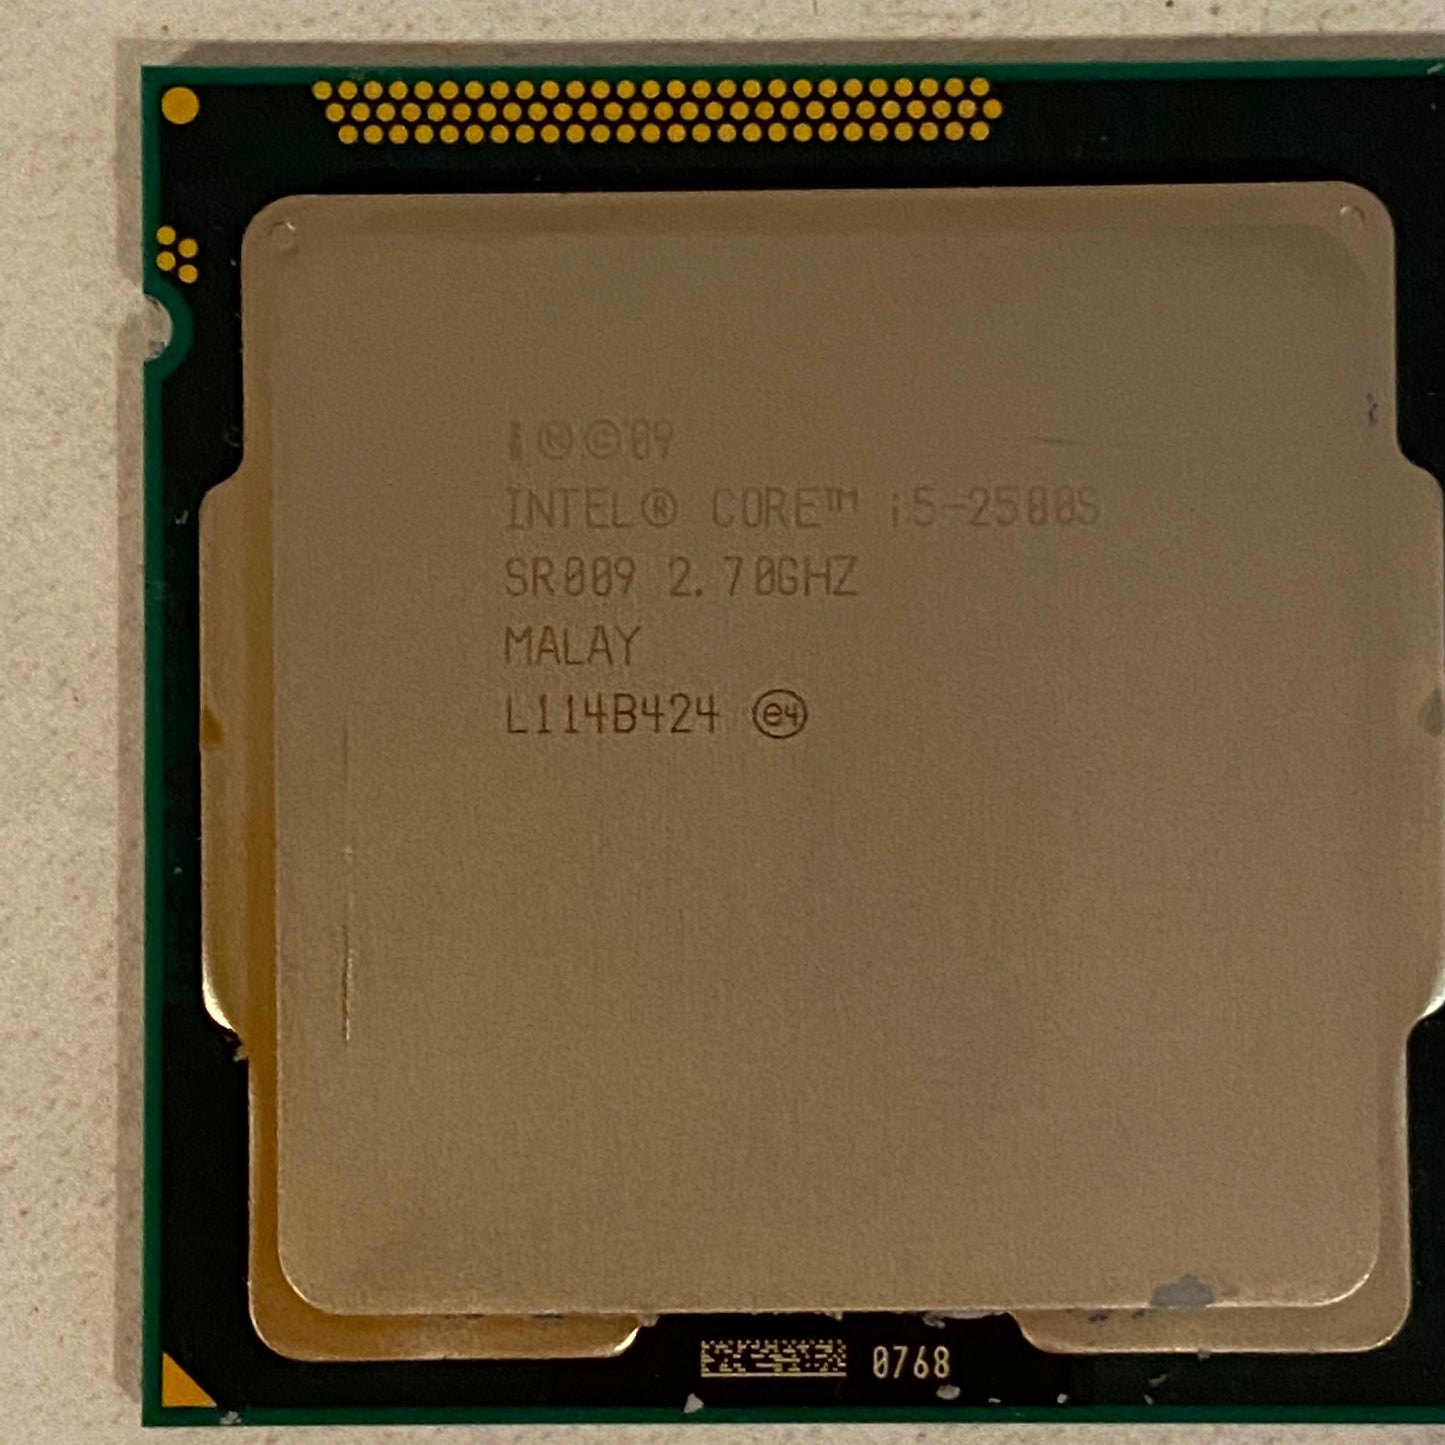 Intel Core i5-2500S SR009 2.7 Ghz Processor